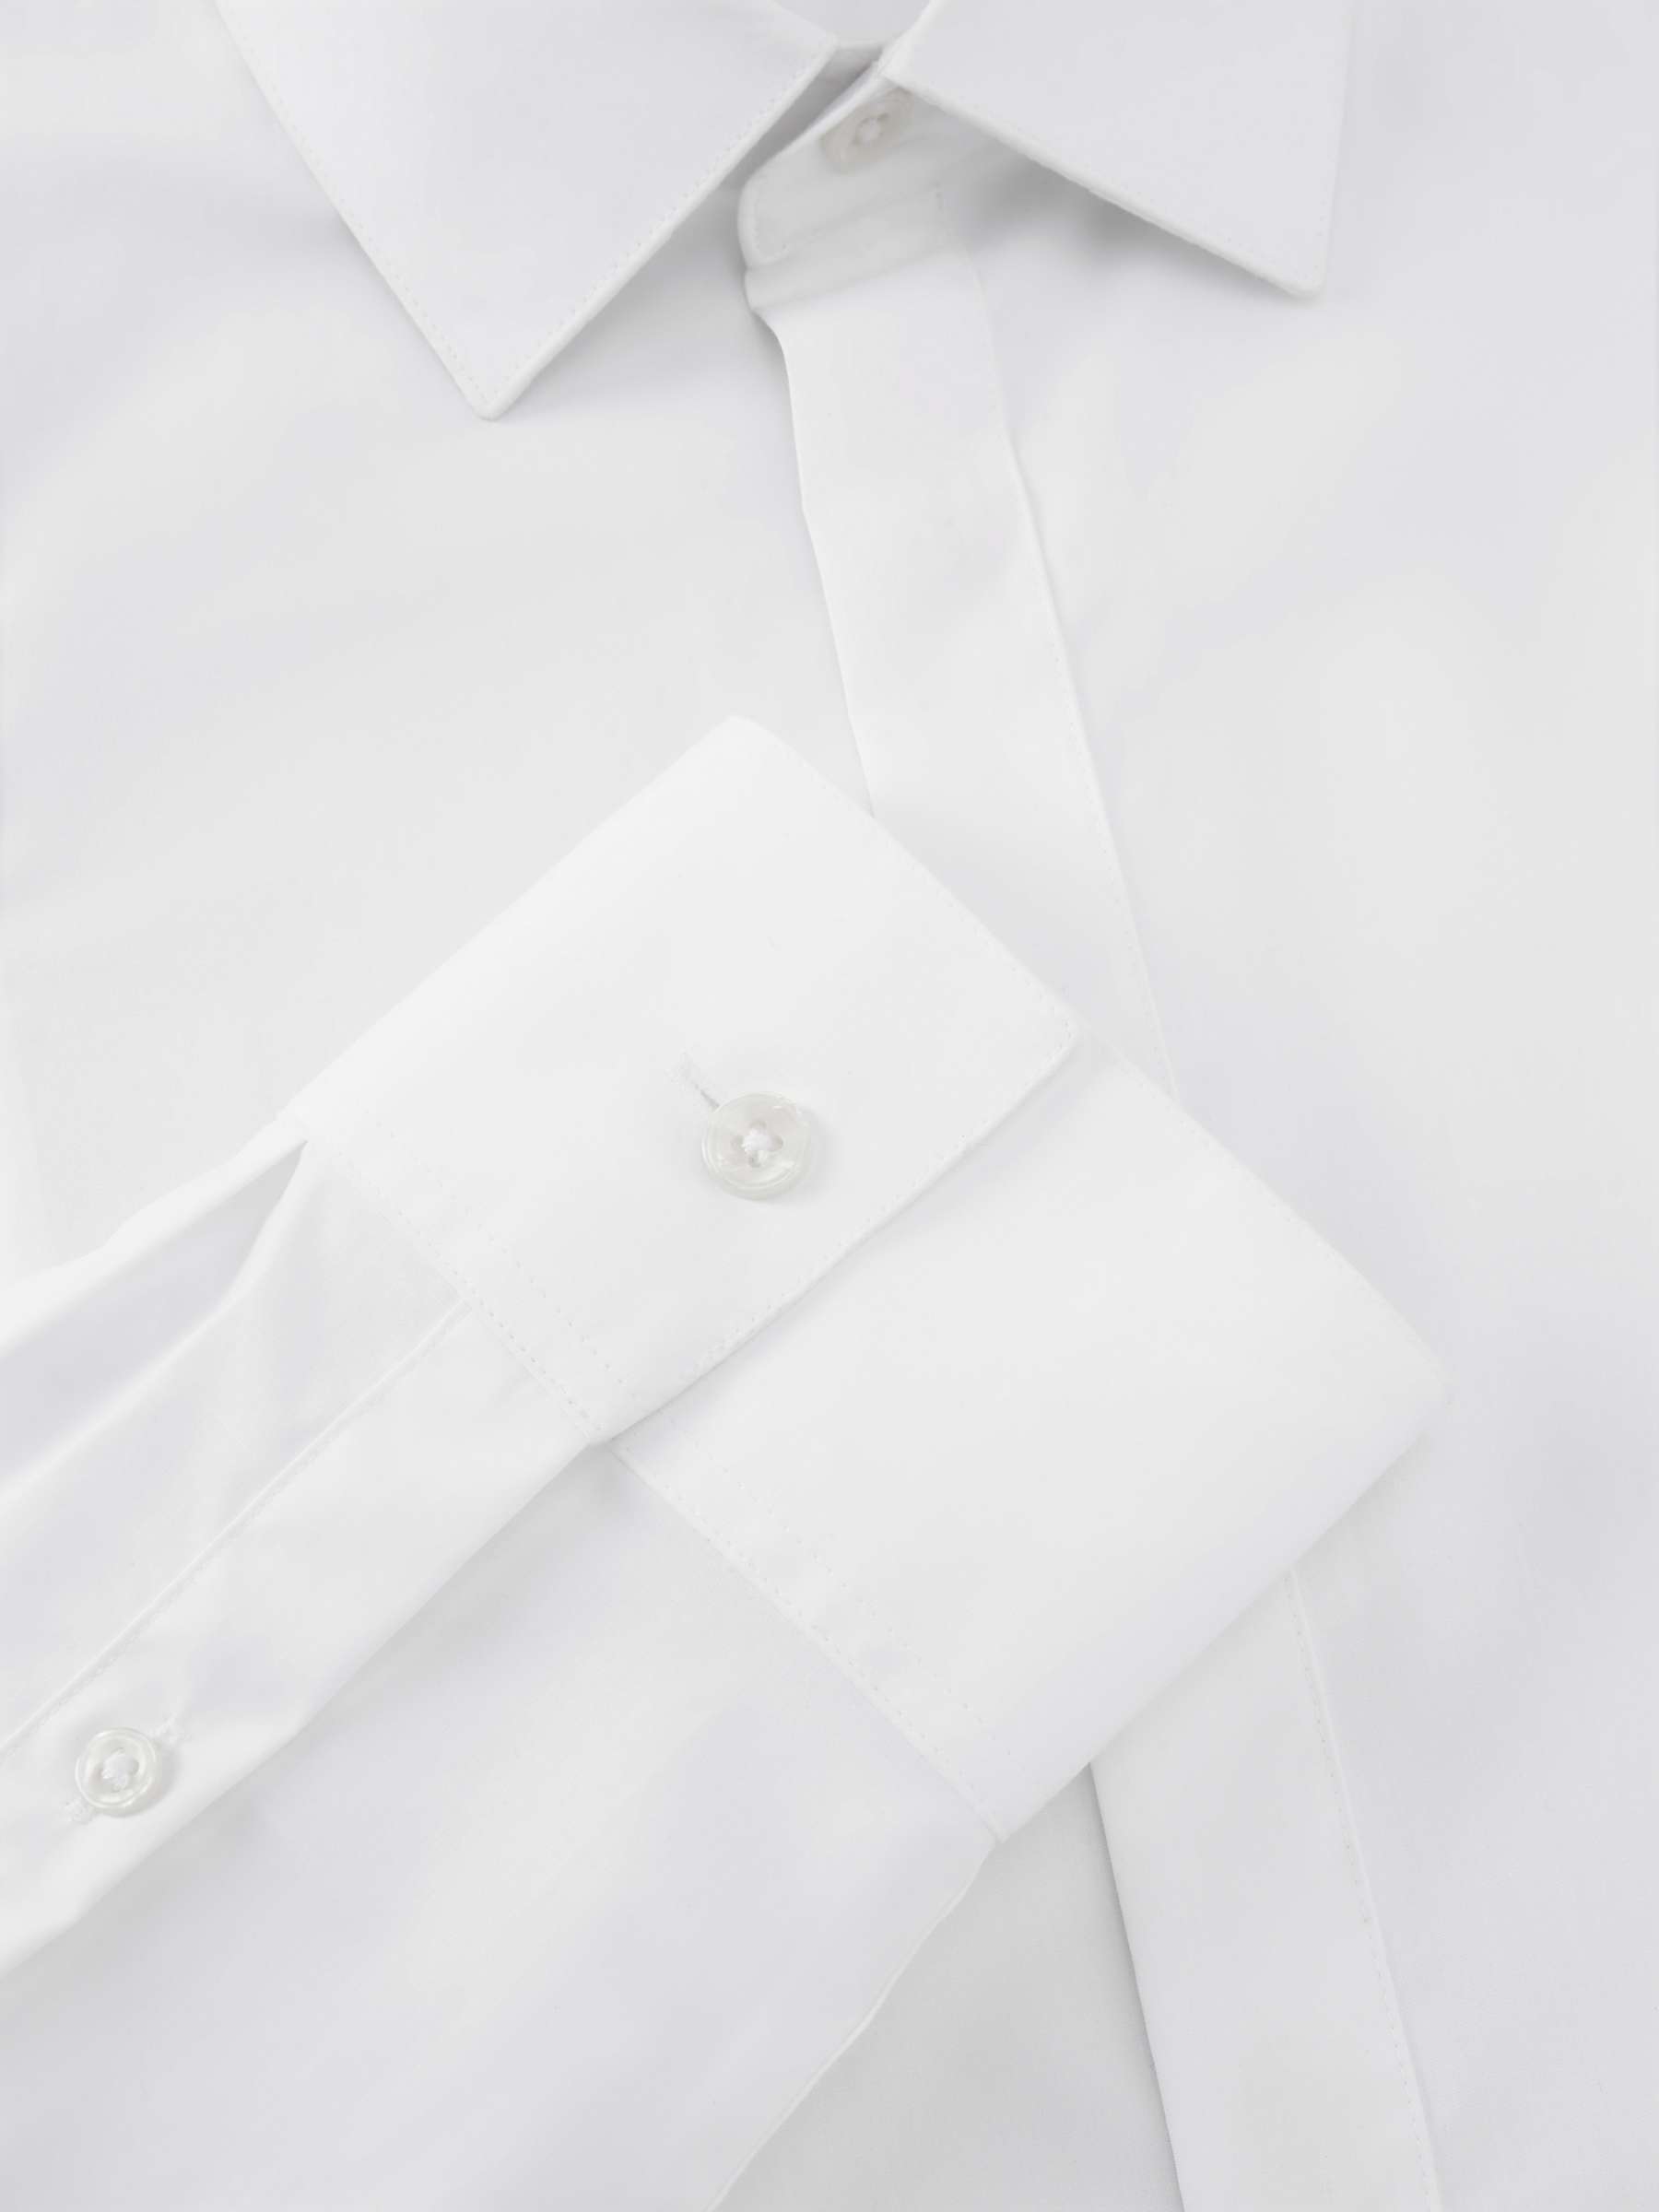 Buy Kin Poplin Dinner Shirt, White Online at johnlewis.com